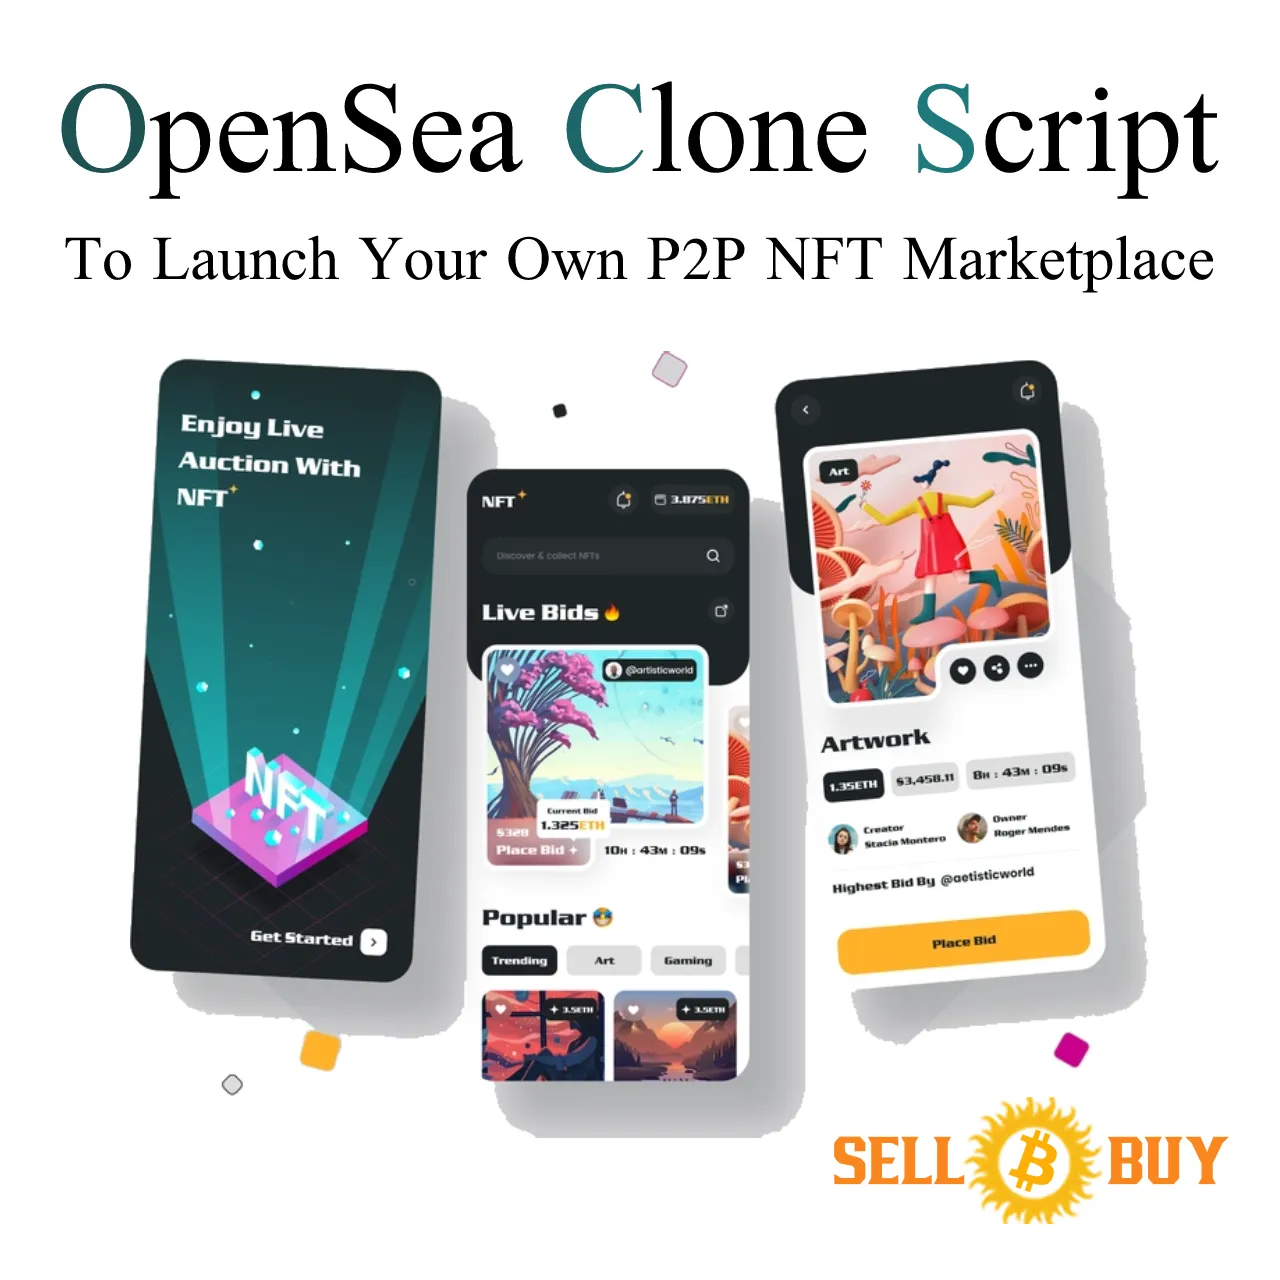 White label OpenSea Clone Script - Sellbitbuy